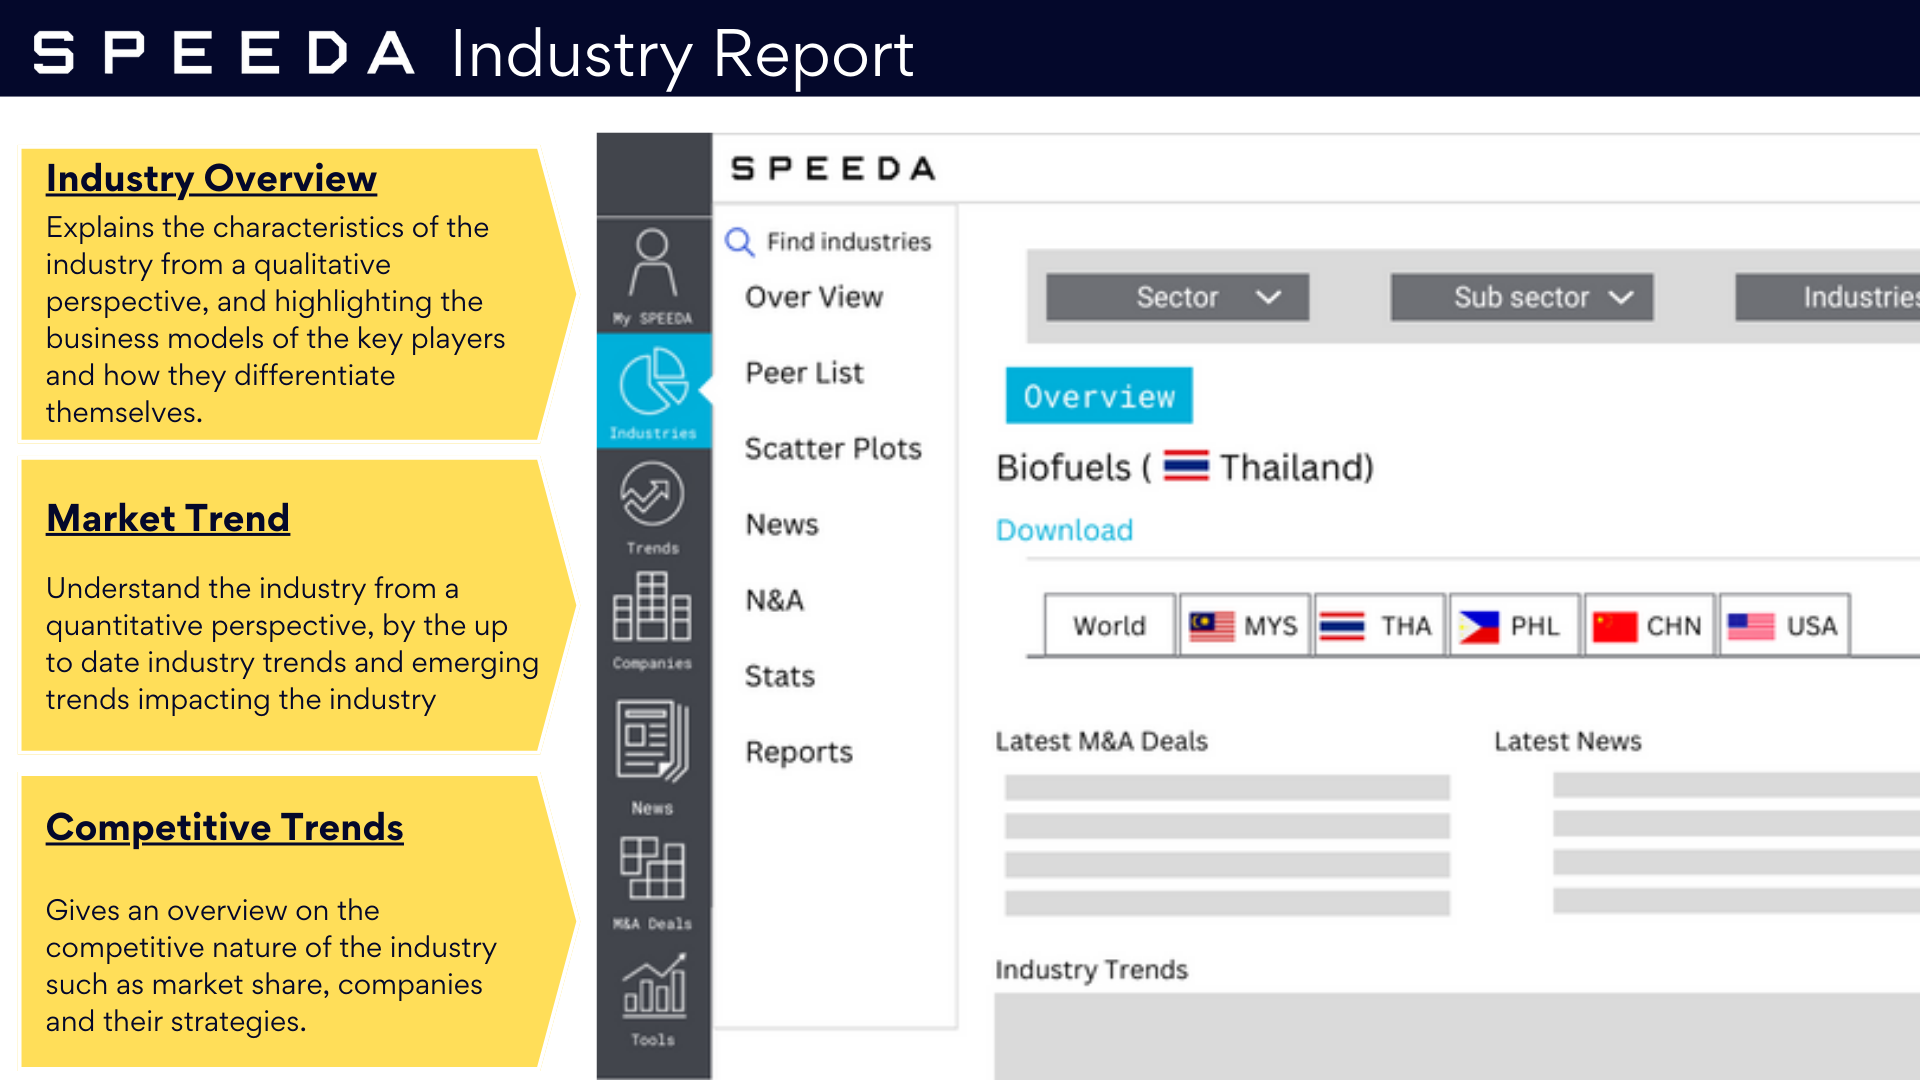 SPEEDA industry report image